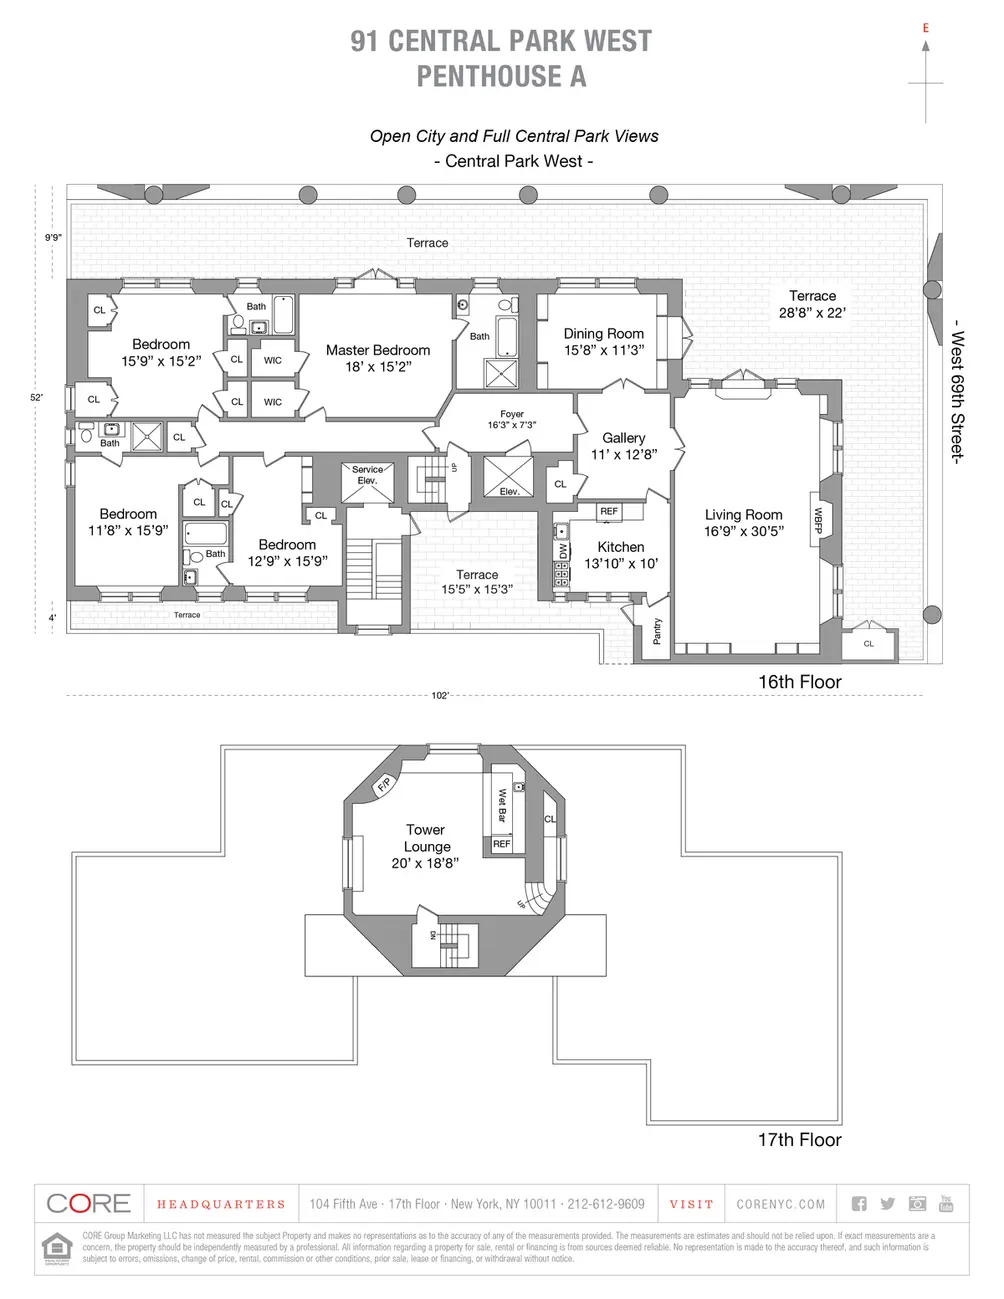 91 Central Park West penthouse floor plan